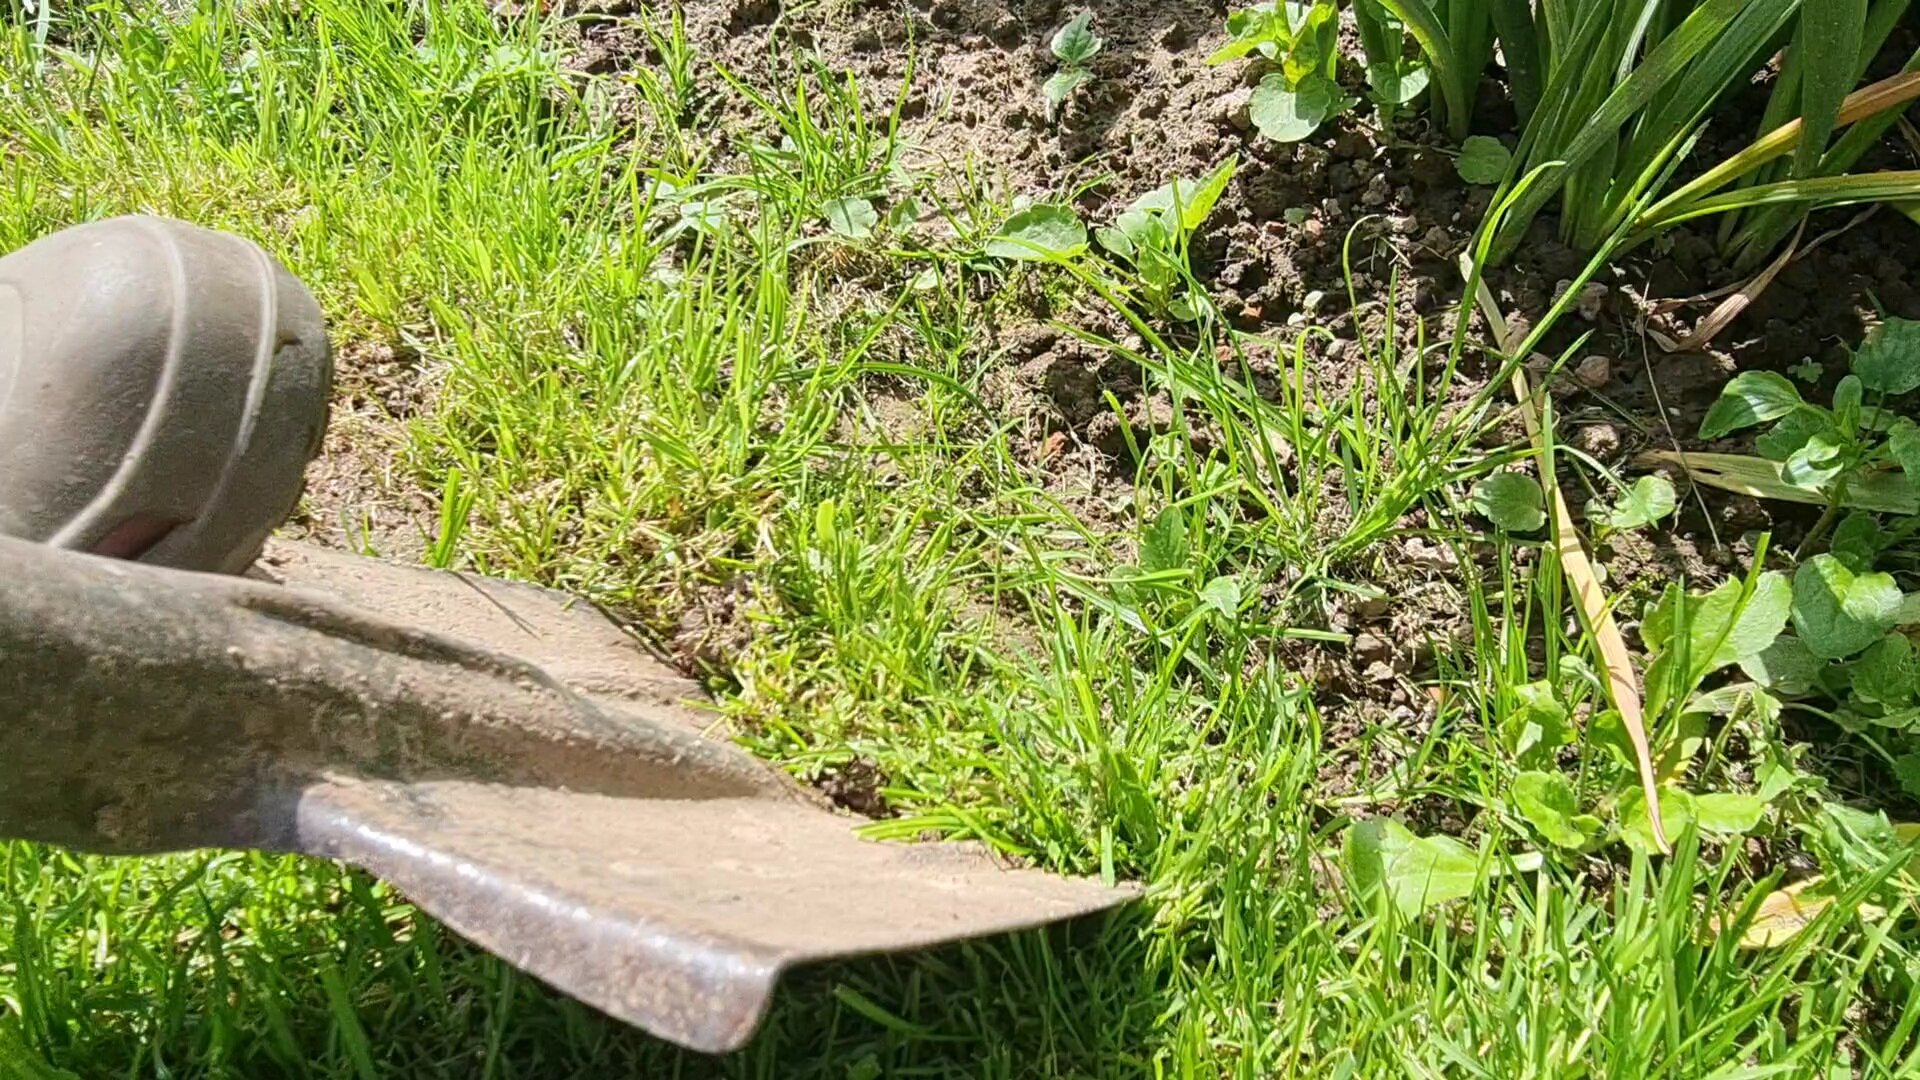 Сделали бесплатное ограждение газона от клумб как в Английских садах. Нужна только лопата и час времени дача,лайфхаки,сад и огород